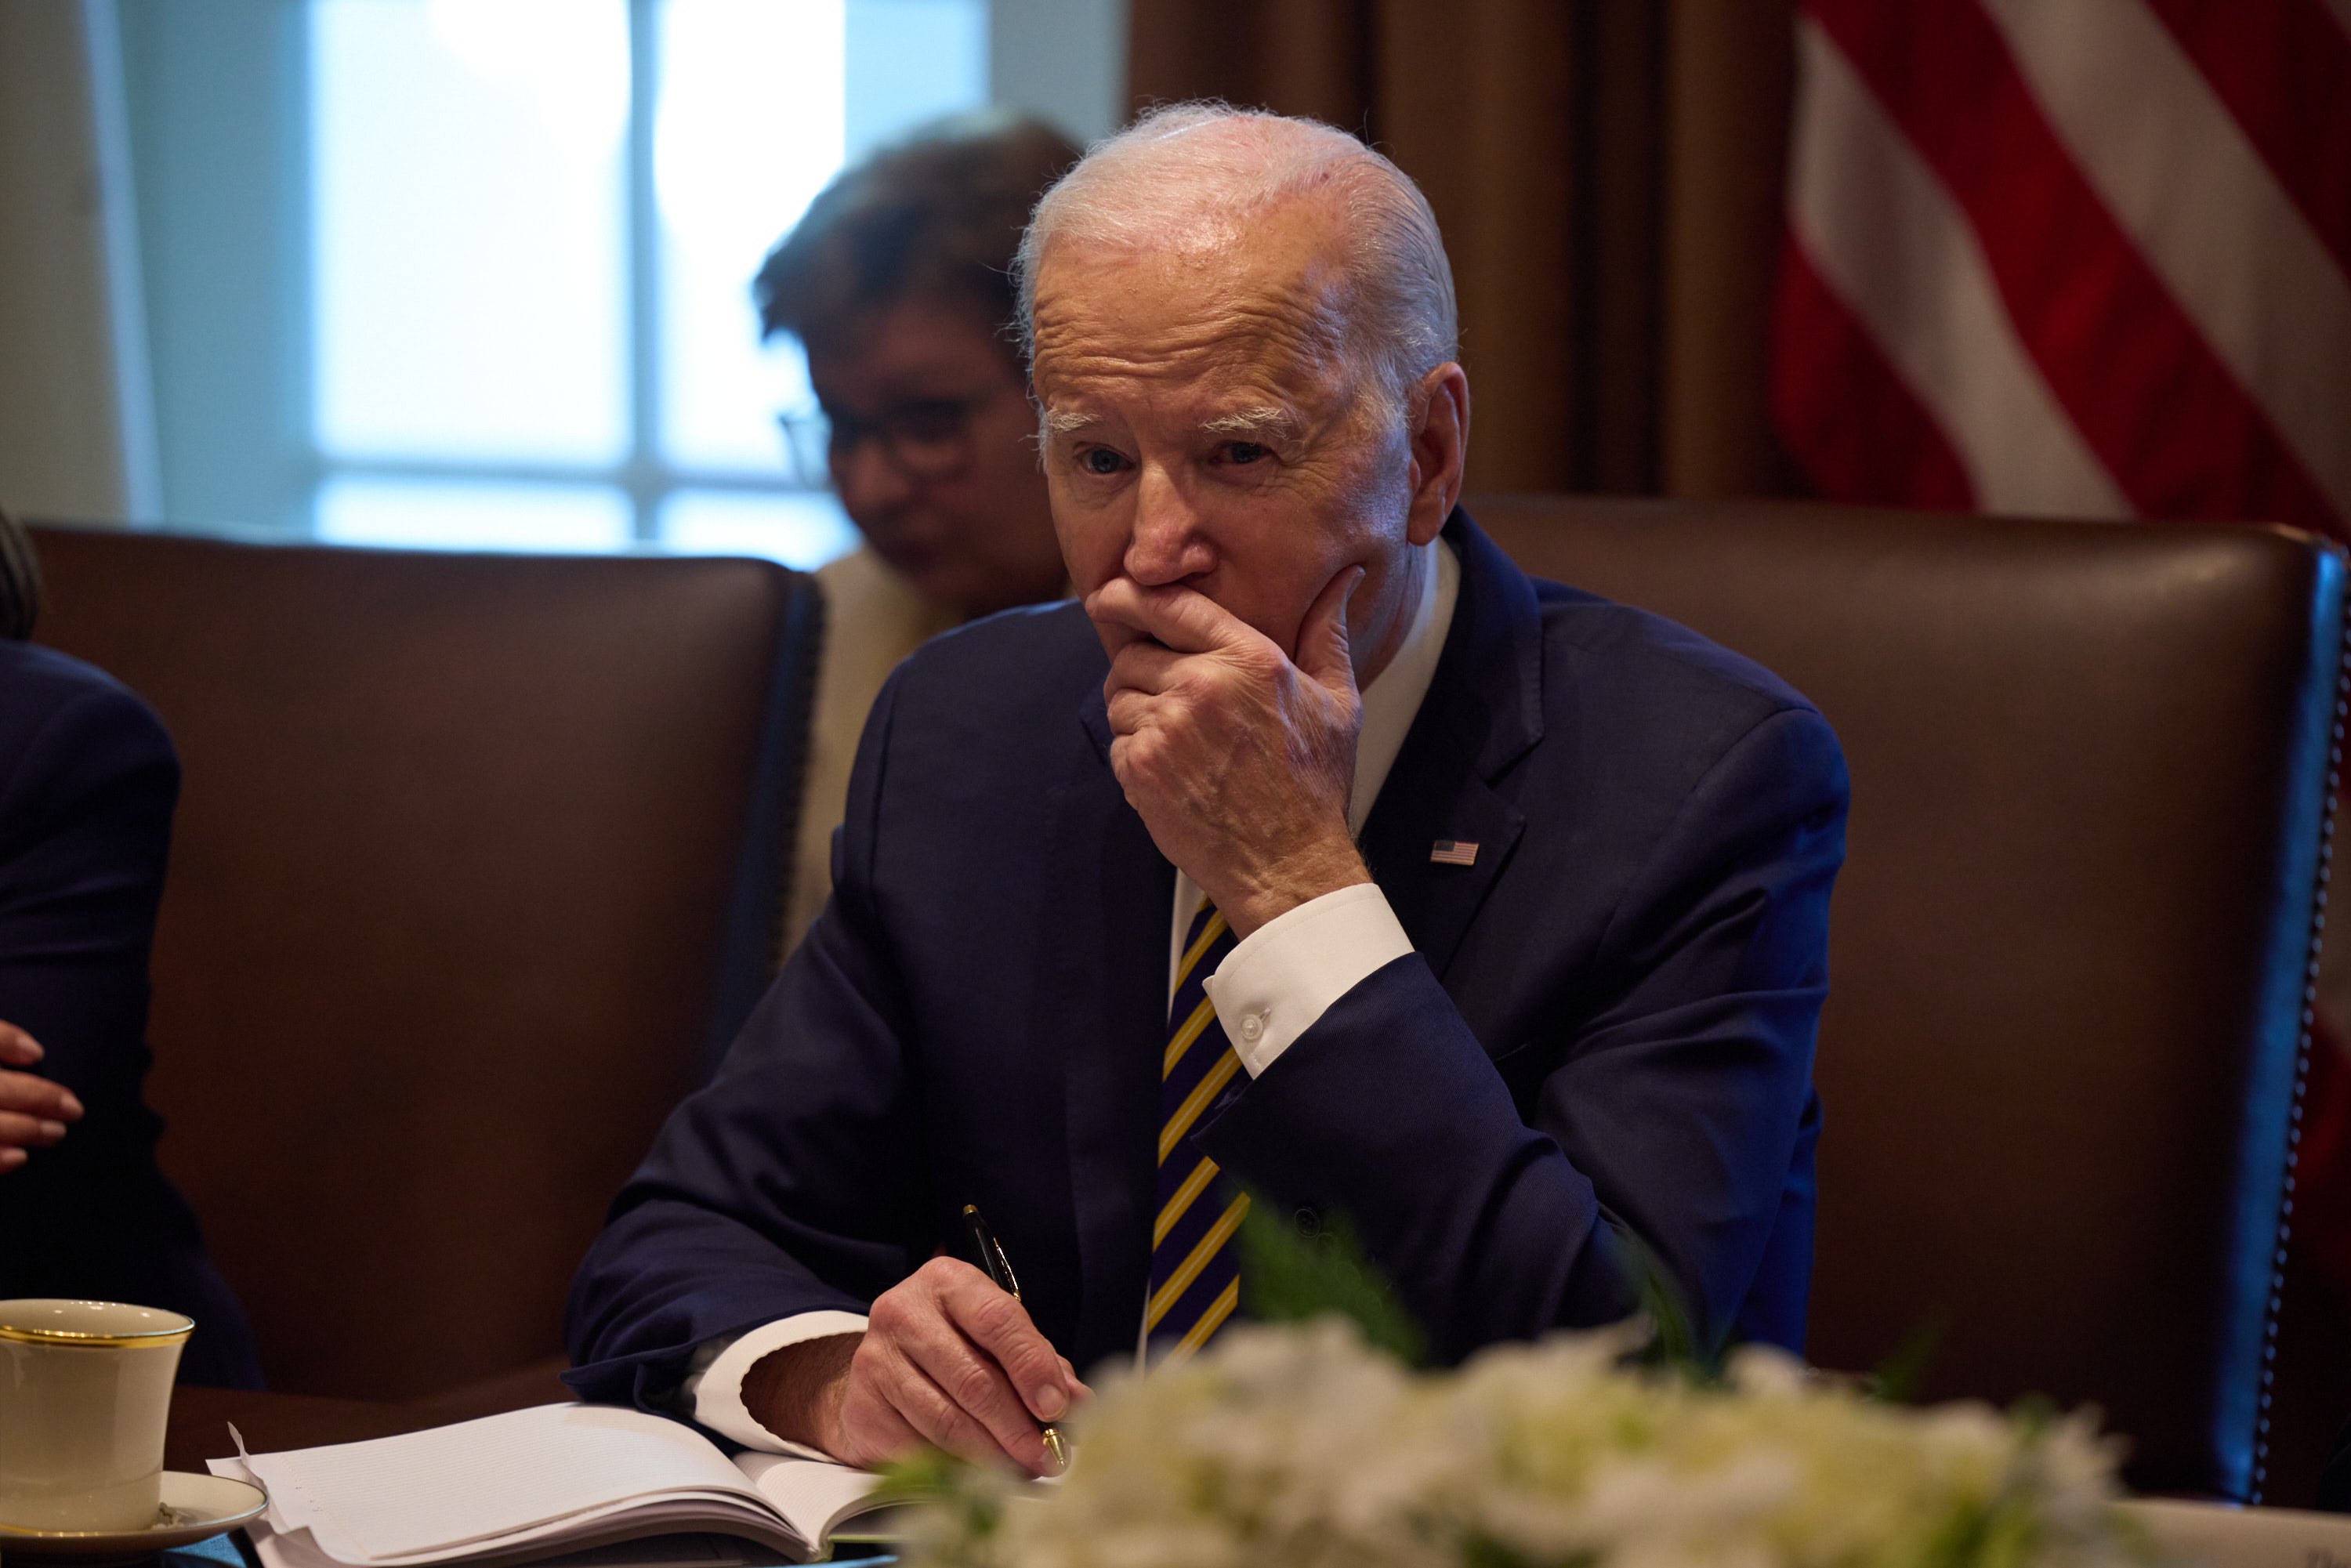 Biden, investigat per la tinença irregular de documents classificats: un cas com el de Trump?